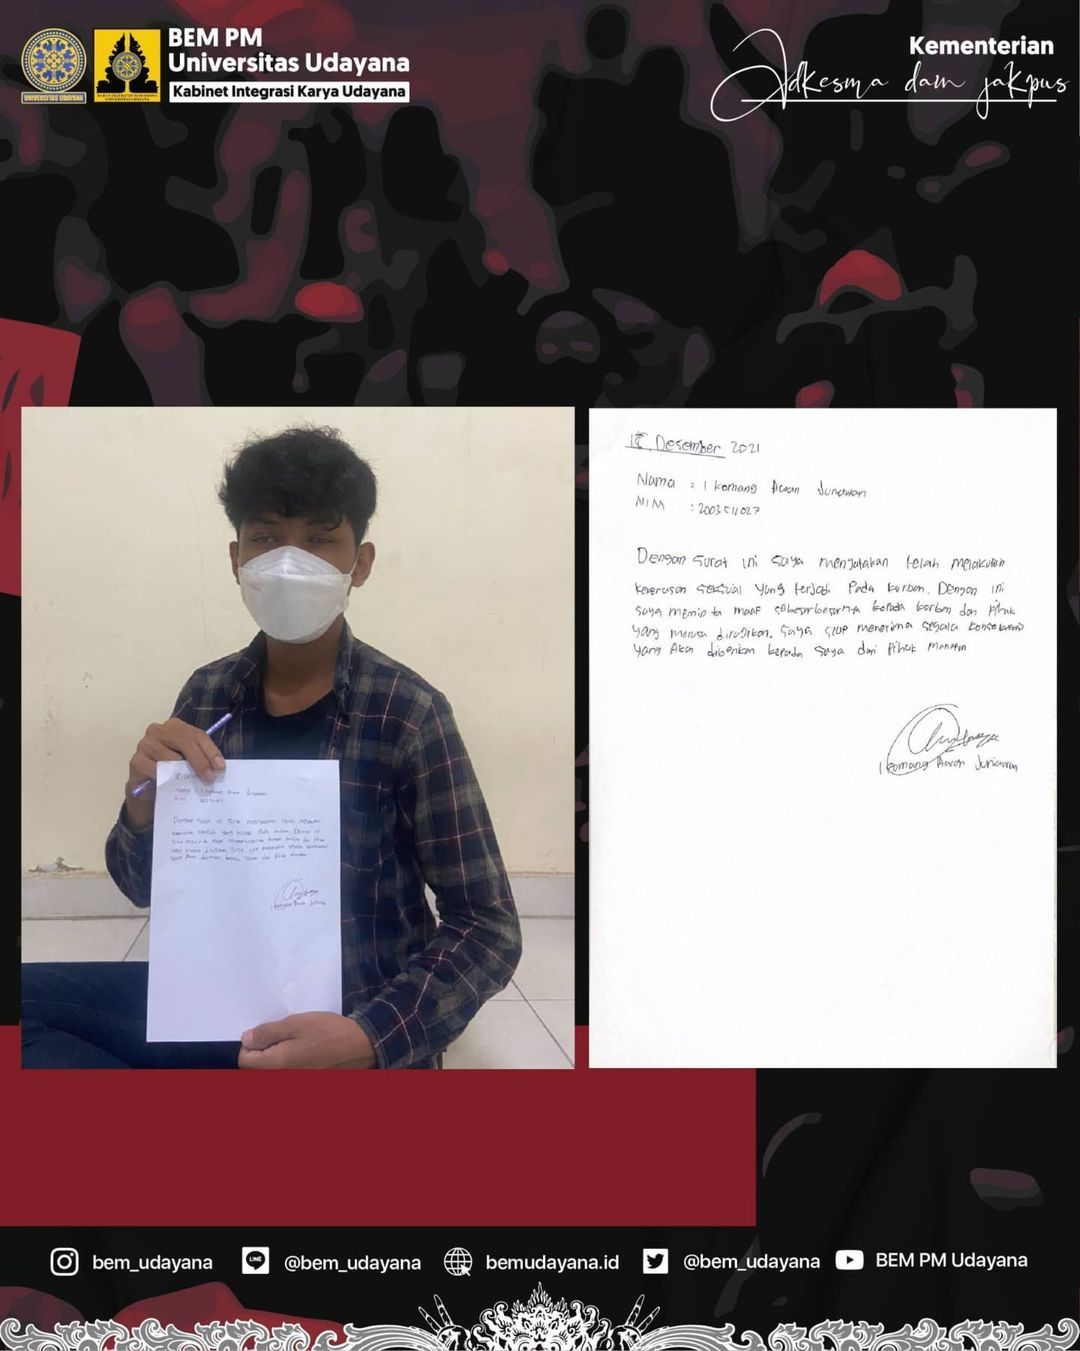 Pelaku pelecehan seksual meminta maaf dan membuat surat pernyataan